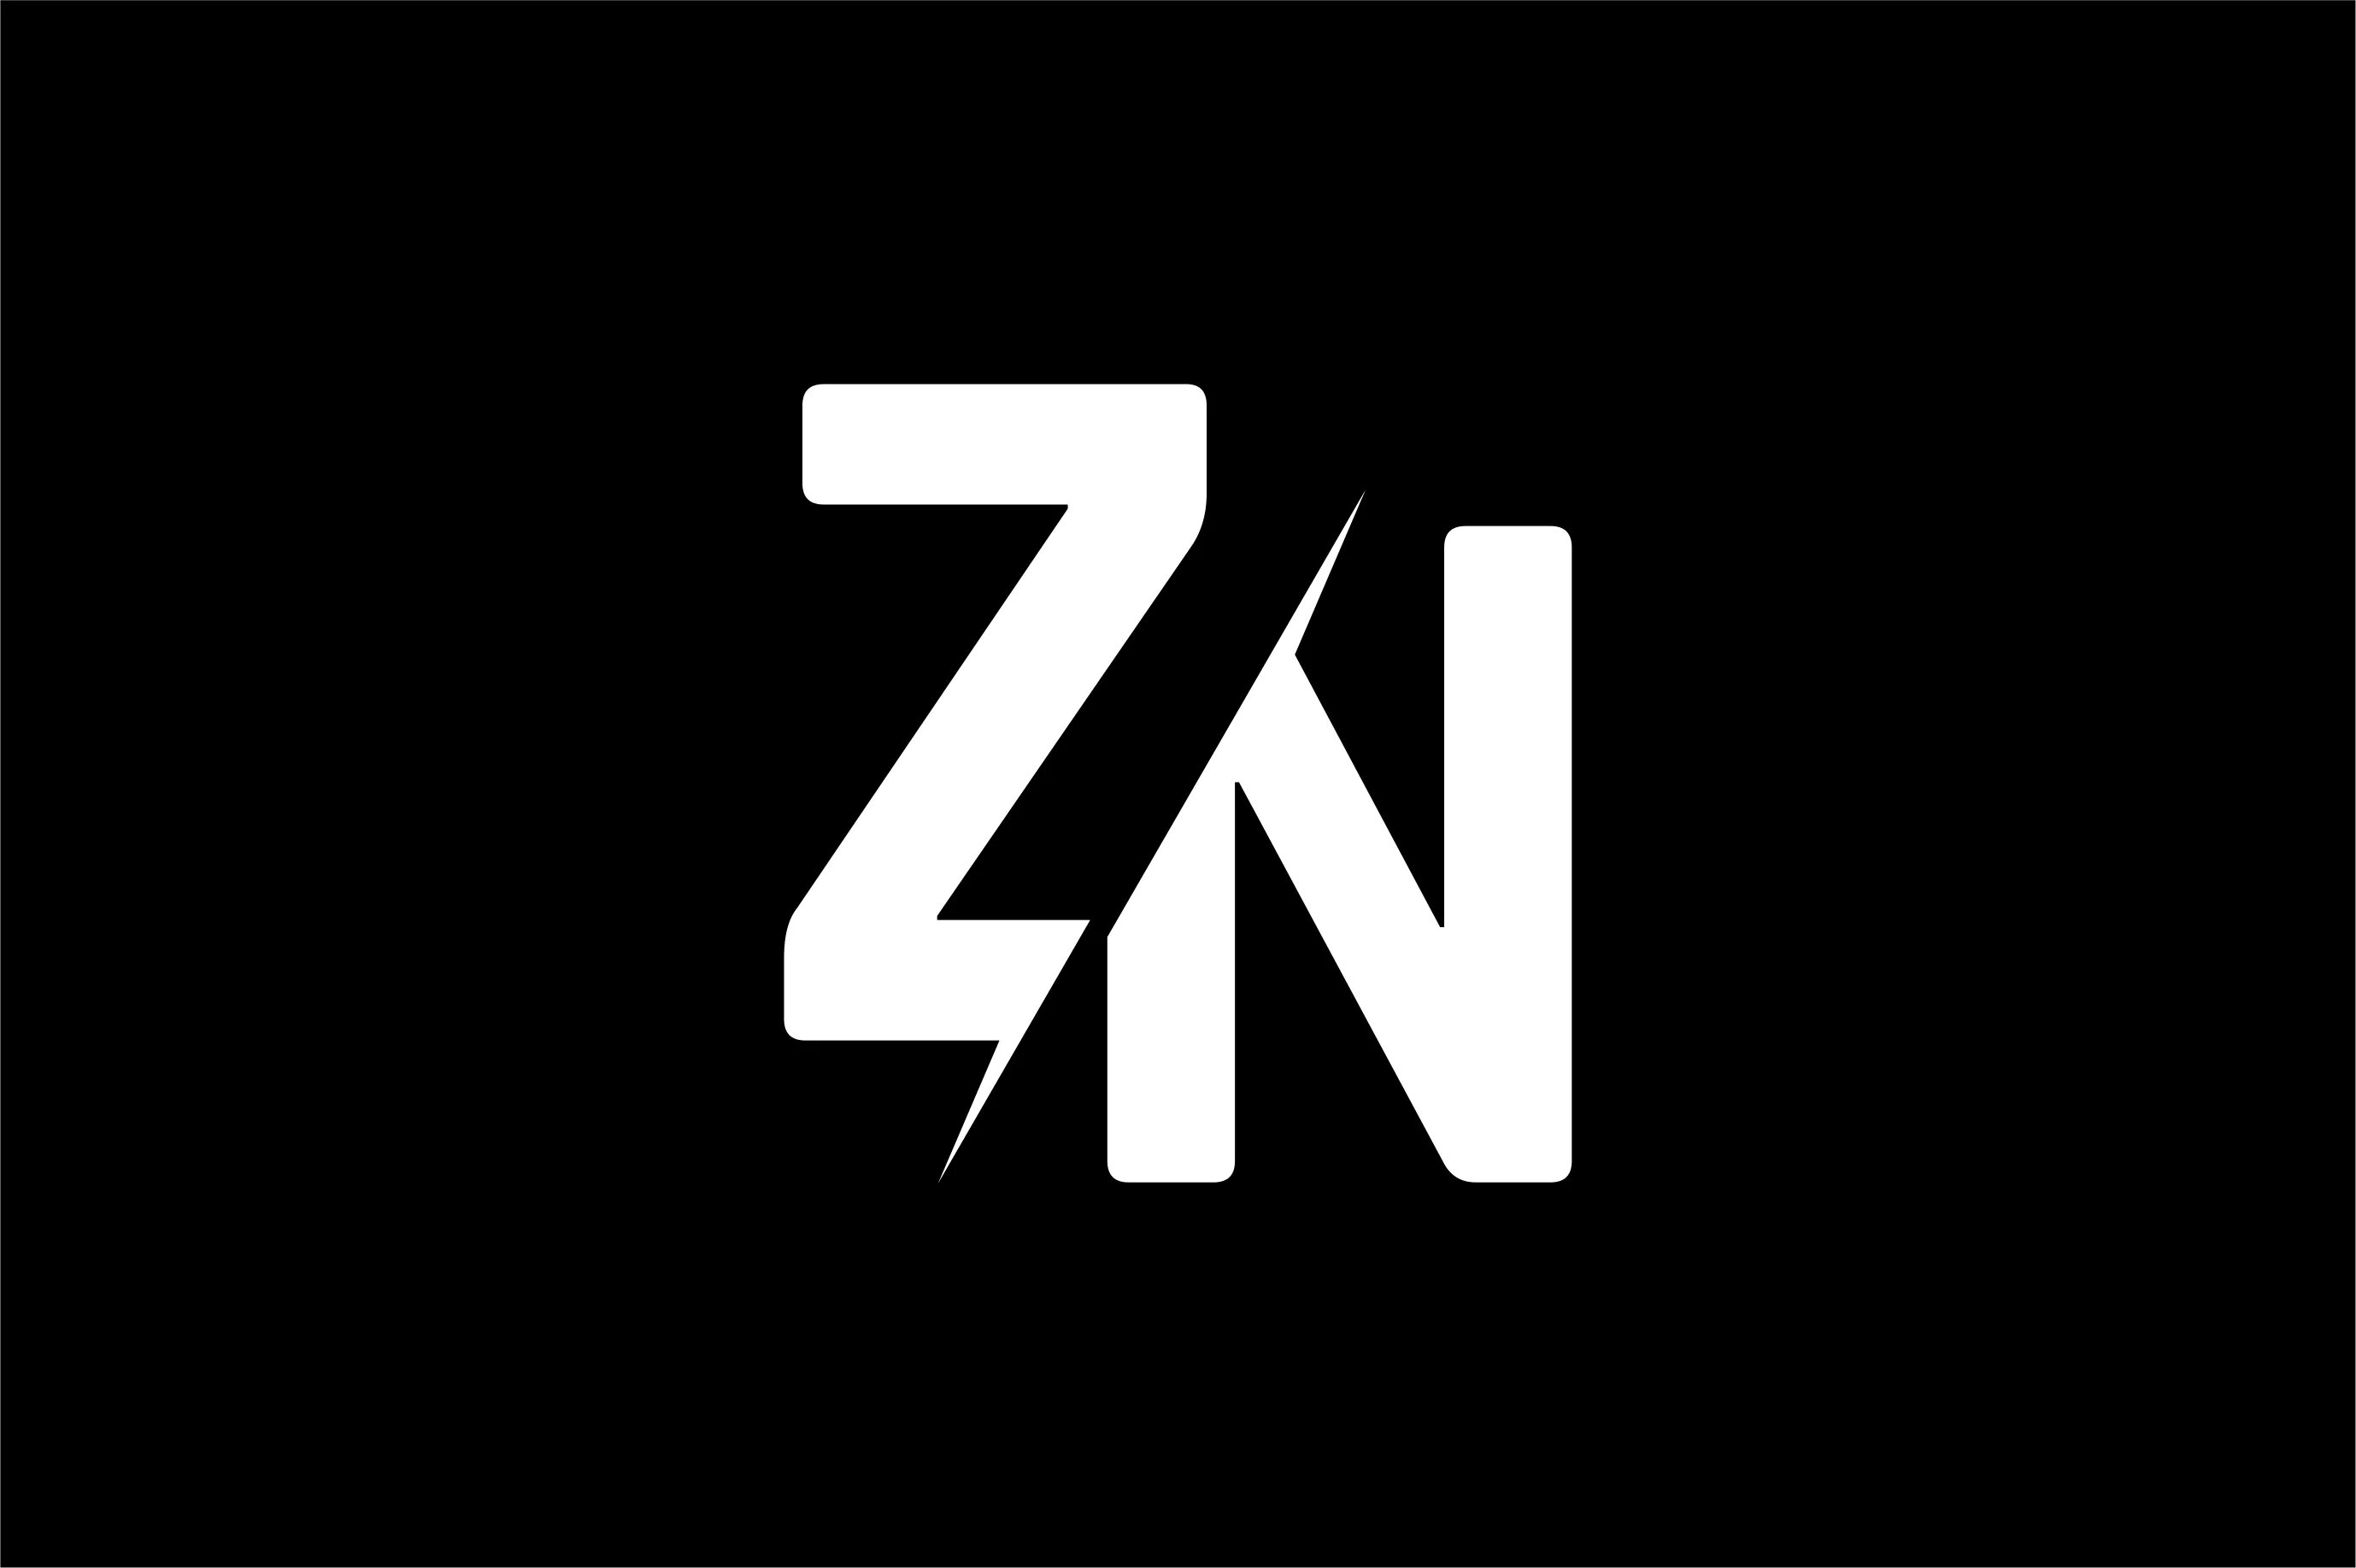 Zn z. ZN логотип. Буква z. Логотип с буквой n. Картинки с буквой z.